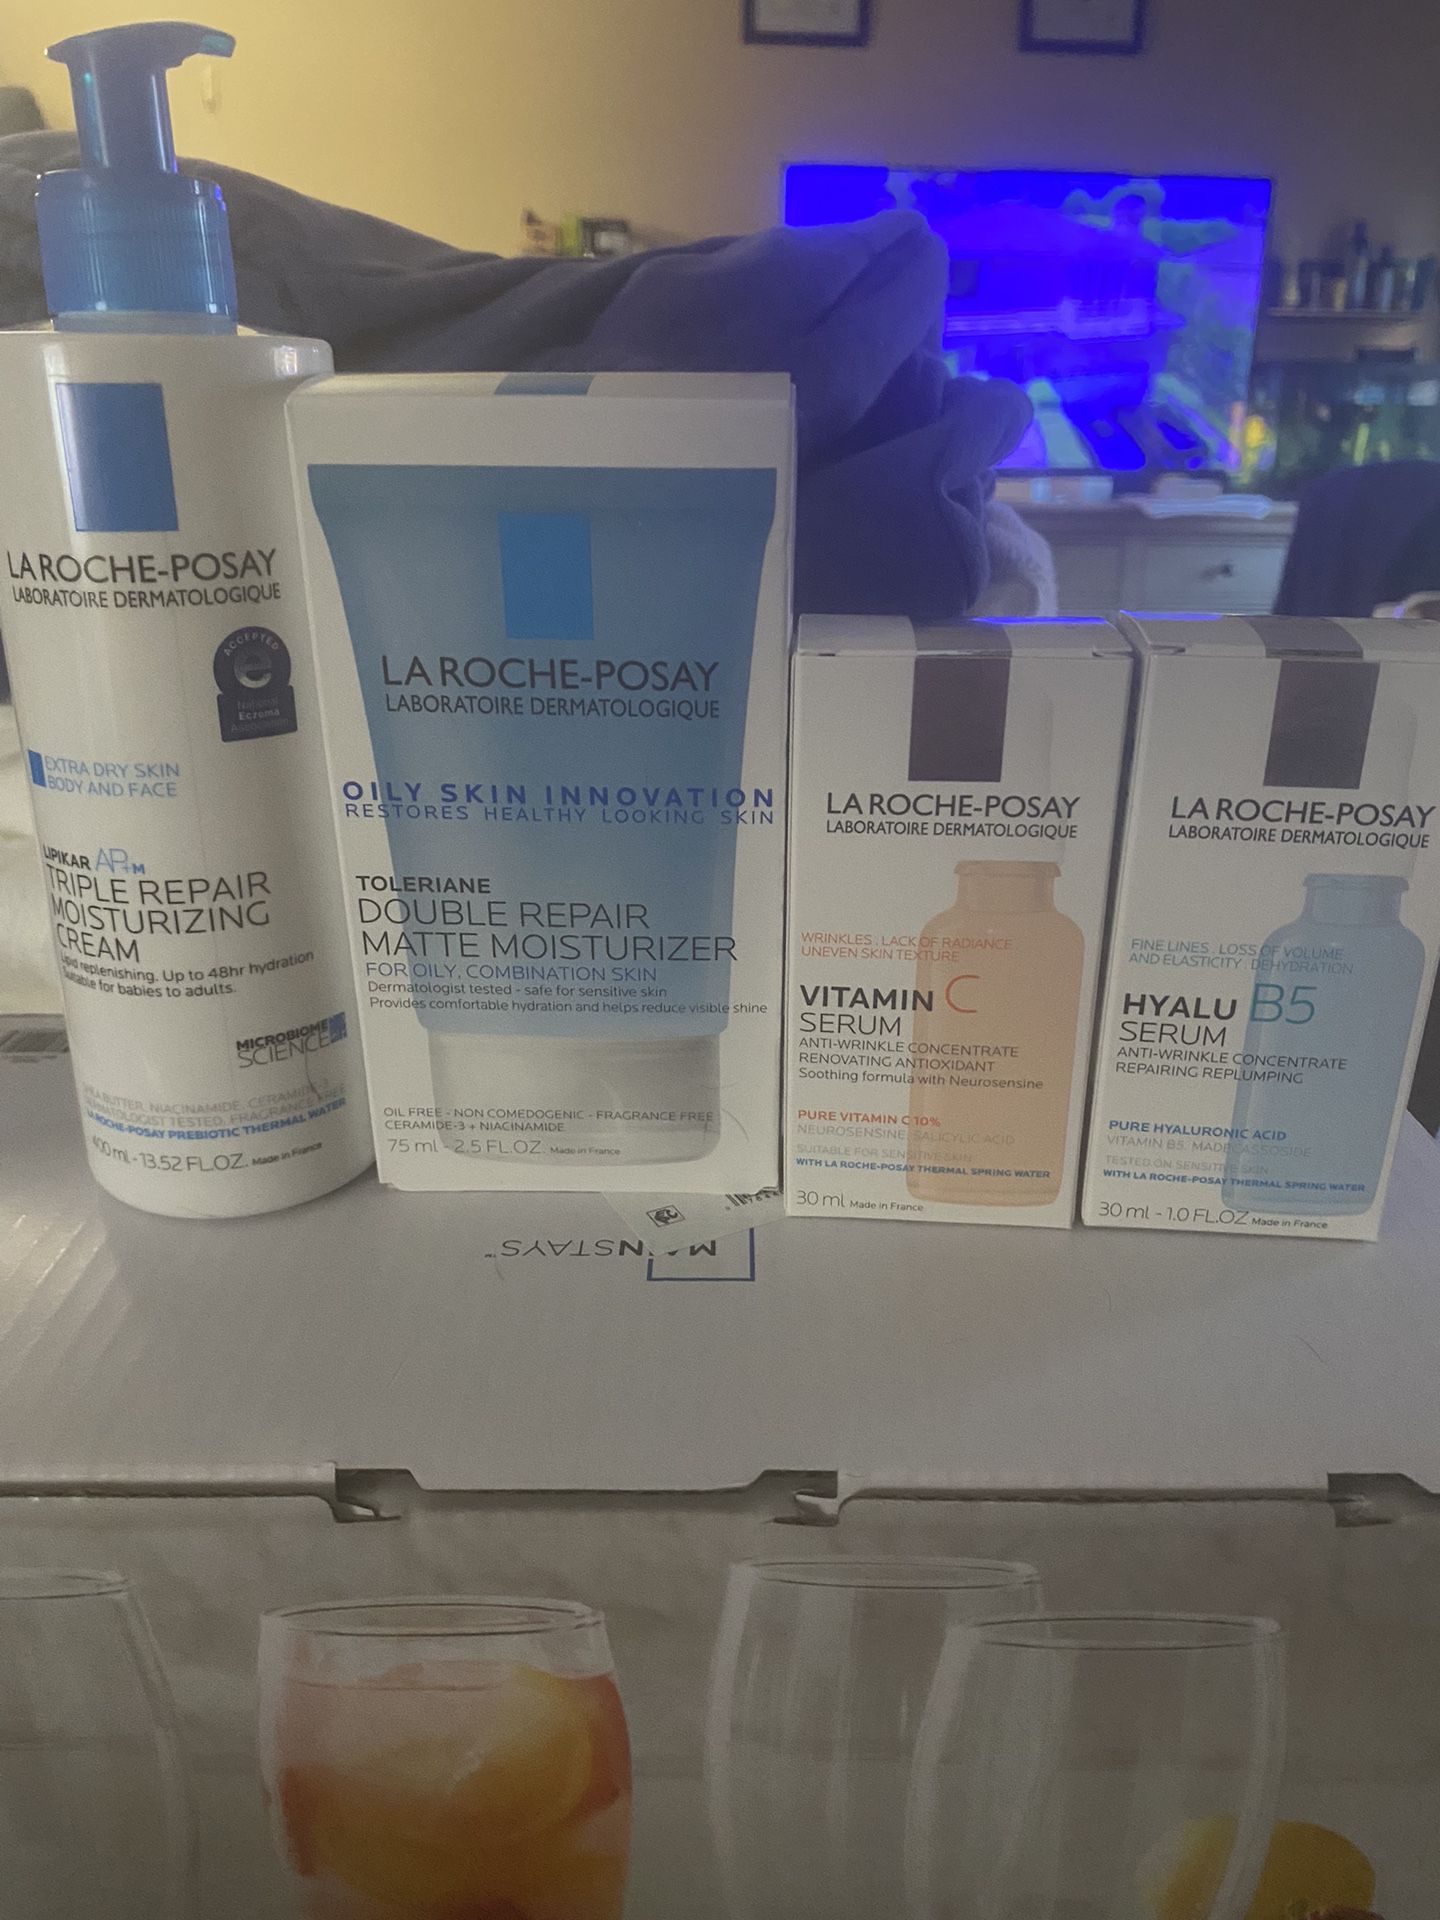 La Roche-Posay Skin Care Products